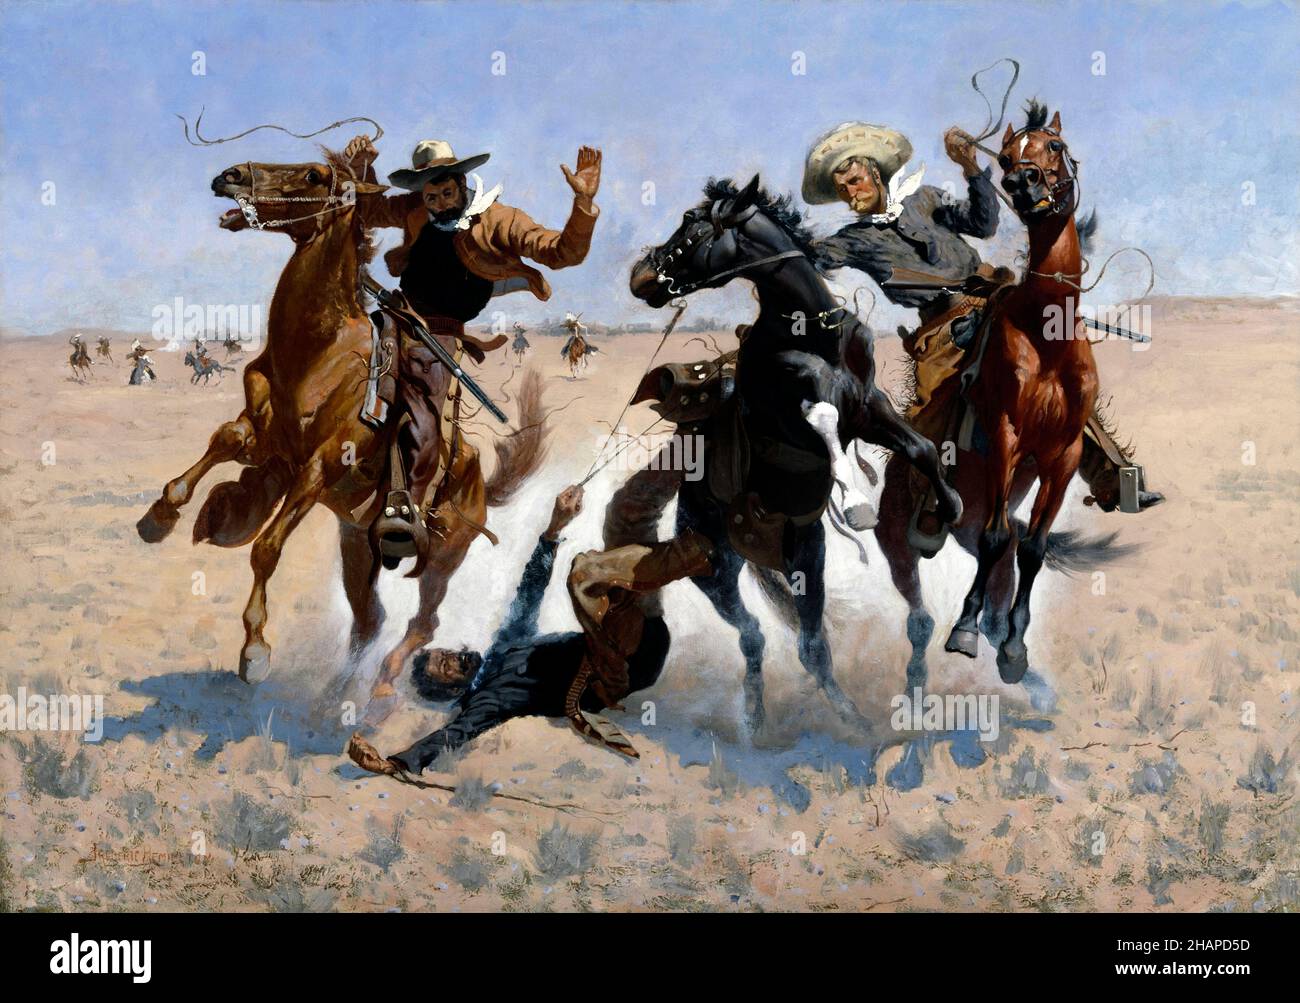 Aide à un camarade de l'artiste américain Frederic Remington (1861-1909), huile sur toile, 1889/90 Banque D'Images